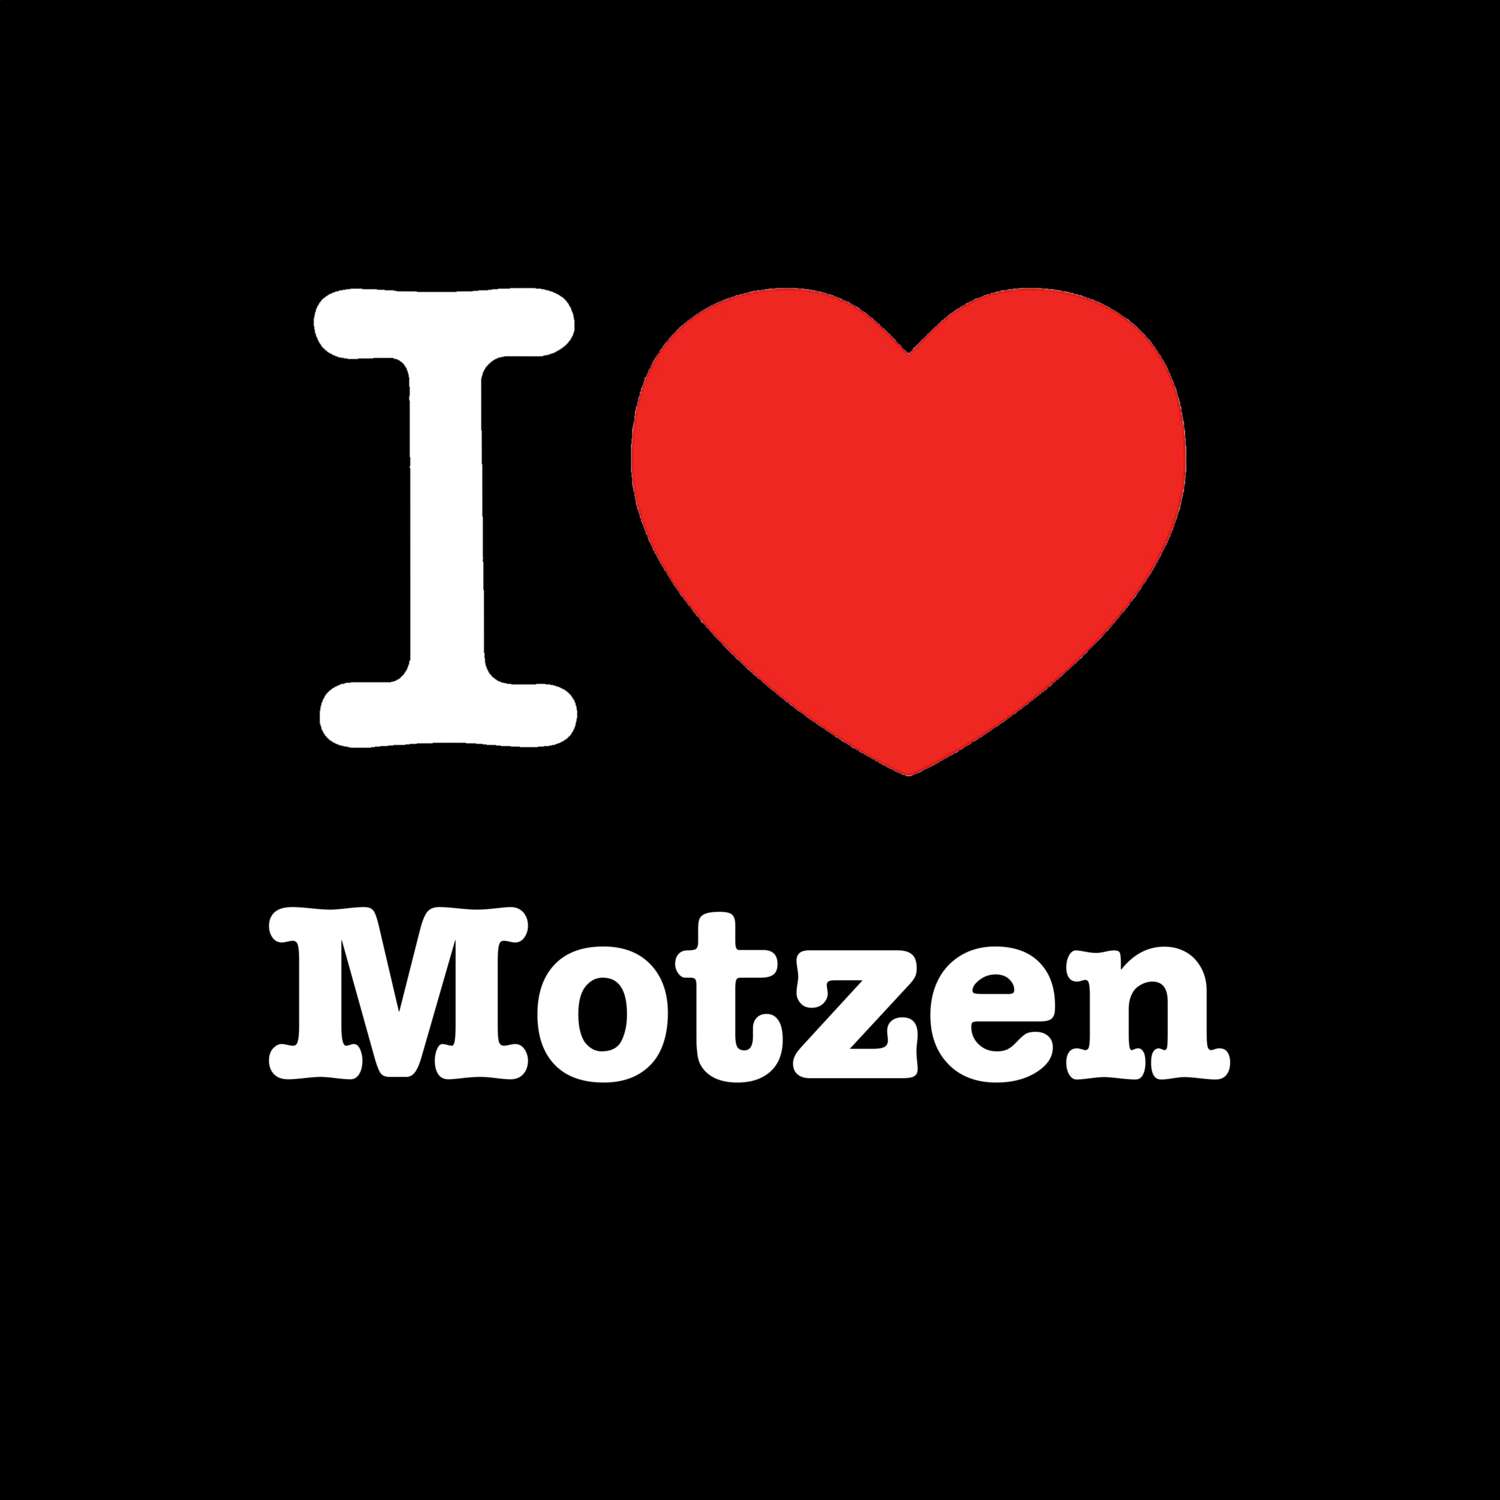 Motzen T-Shirt »I love«